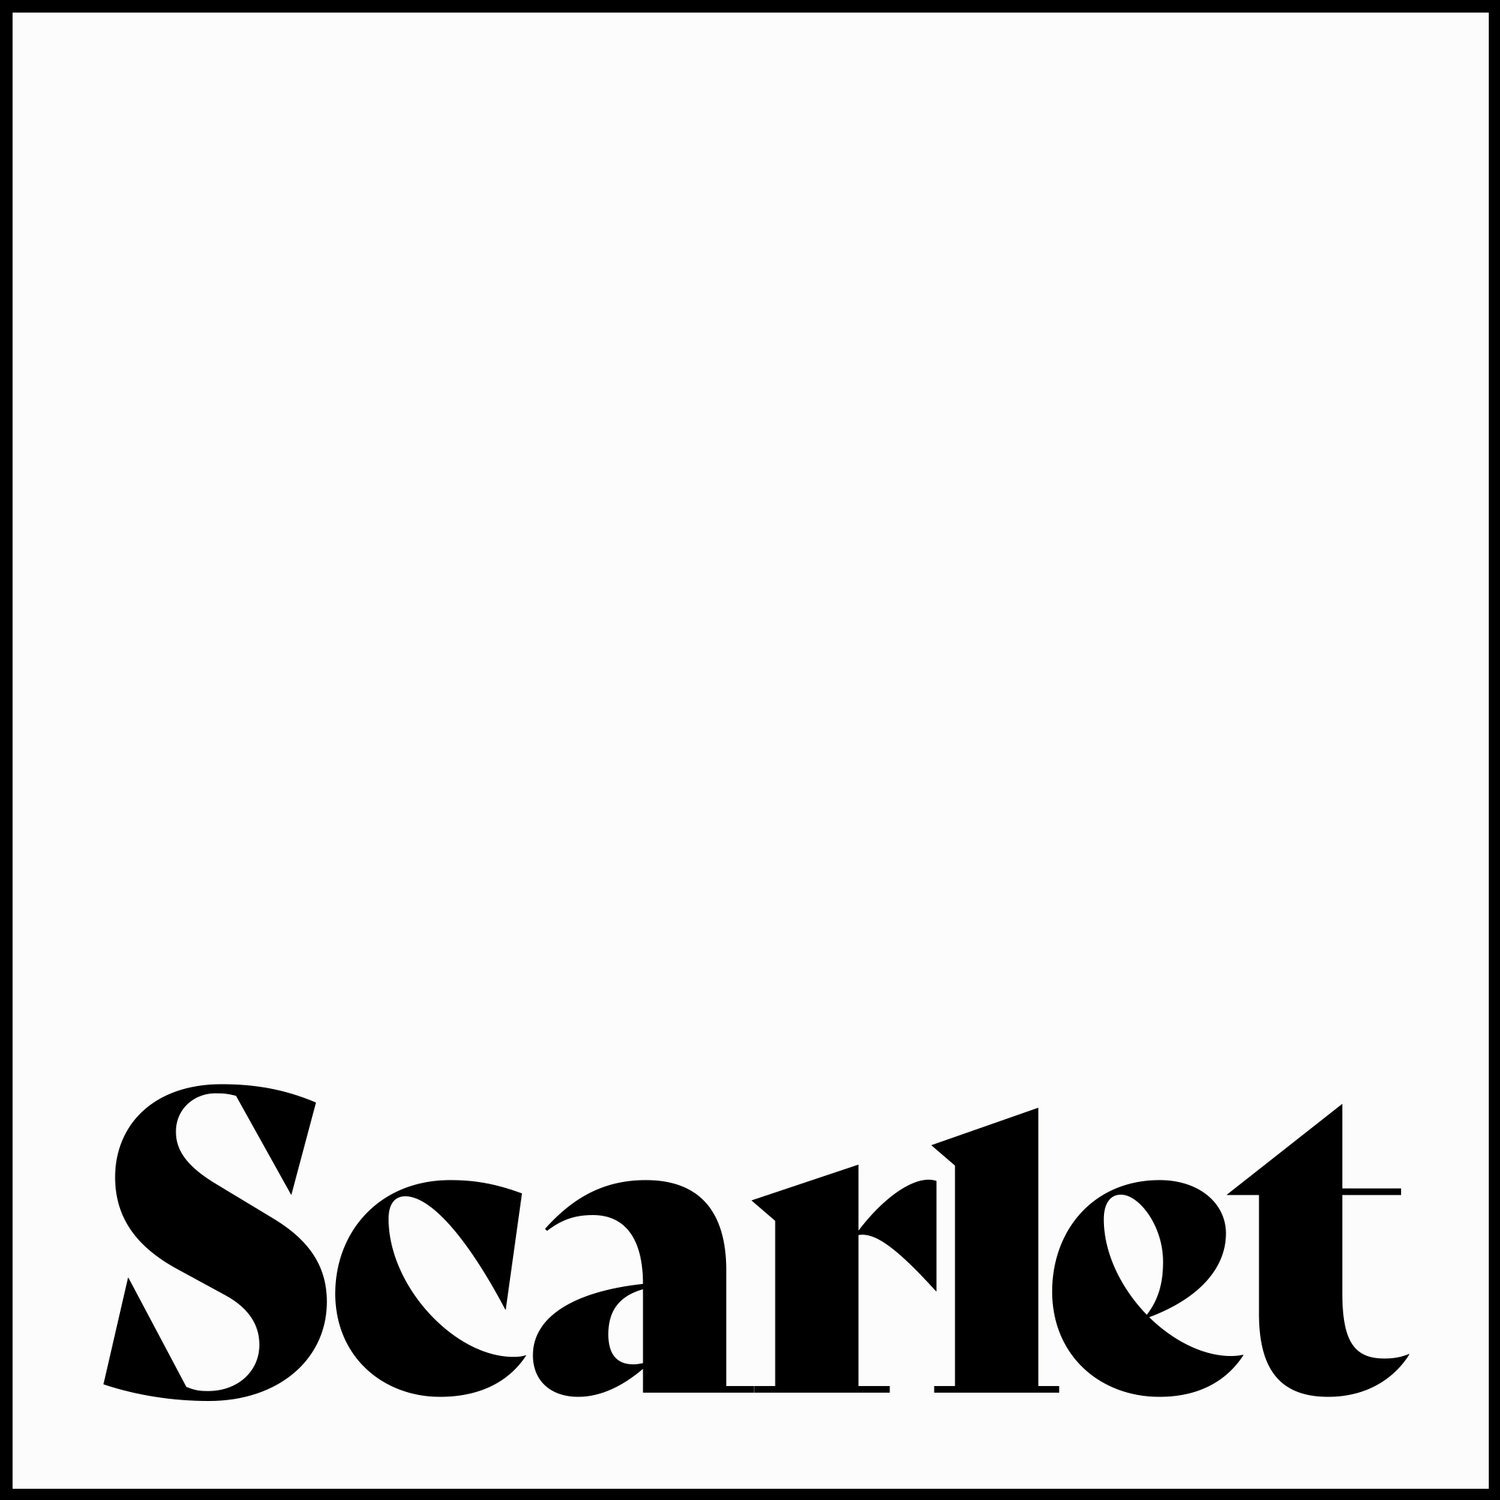 Scarlet Single Malt Scotch Whisky